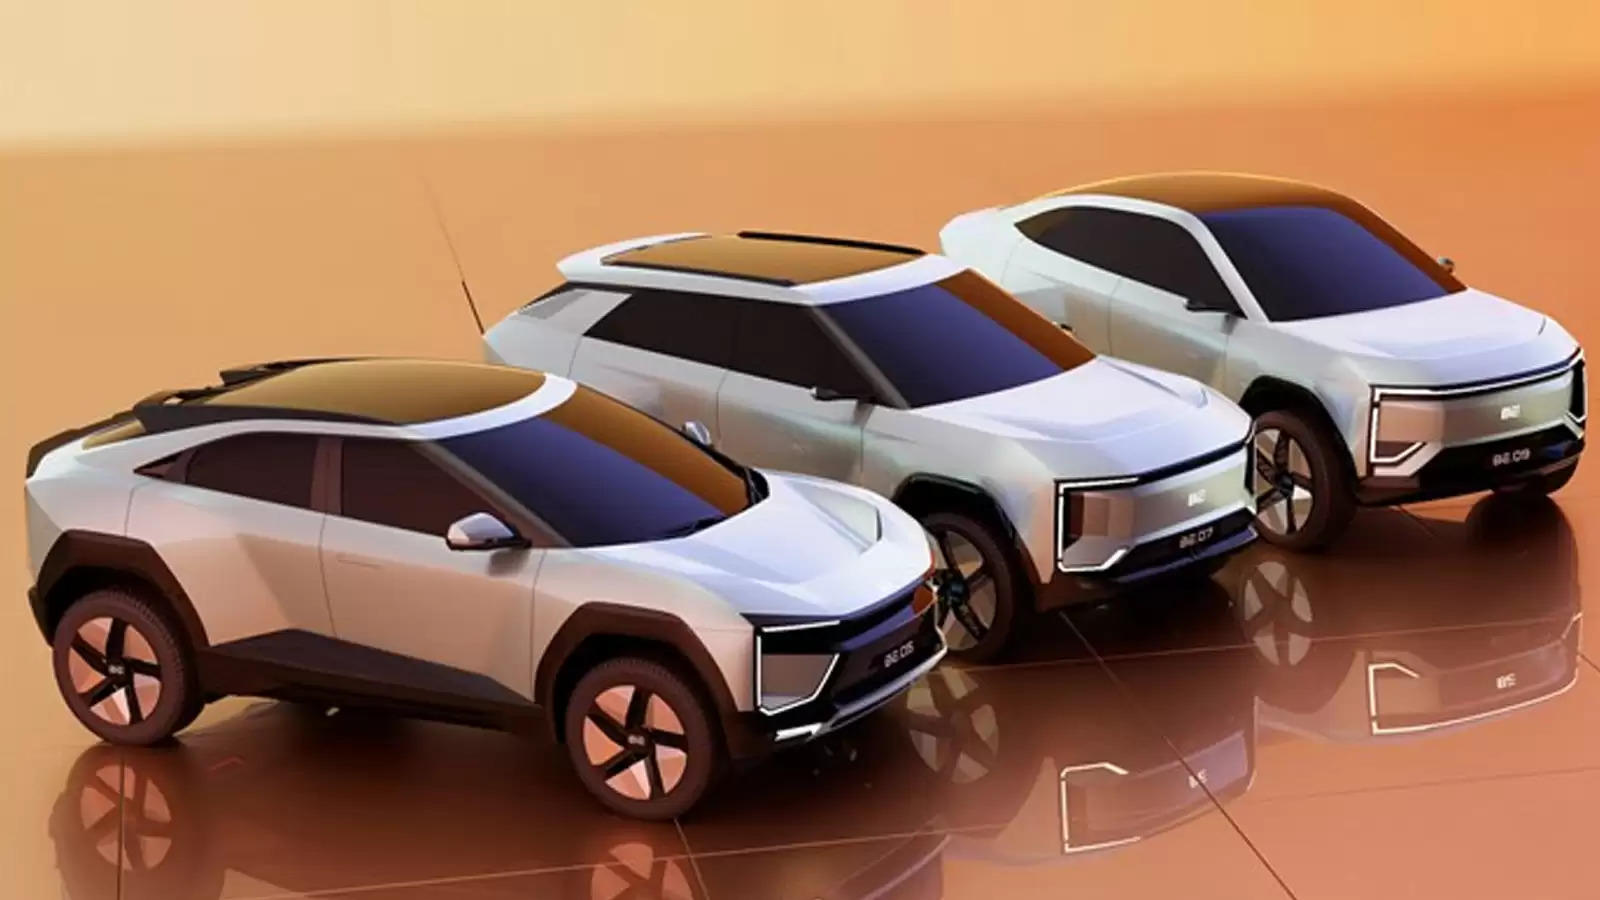 Upcoming Electric Cars : जल्द आने वाली है ये नई Electric Cars, खर्चा होगा ना के बराबर; देखिये लिस्ट  